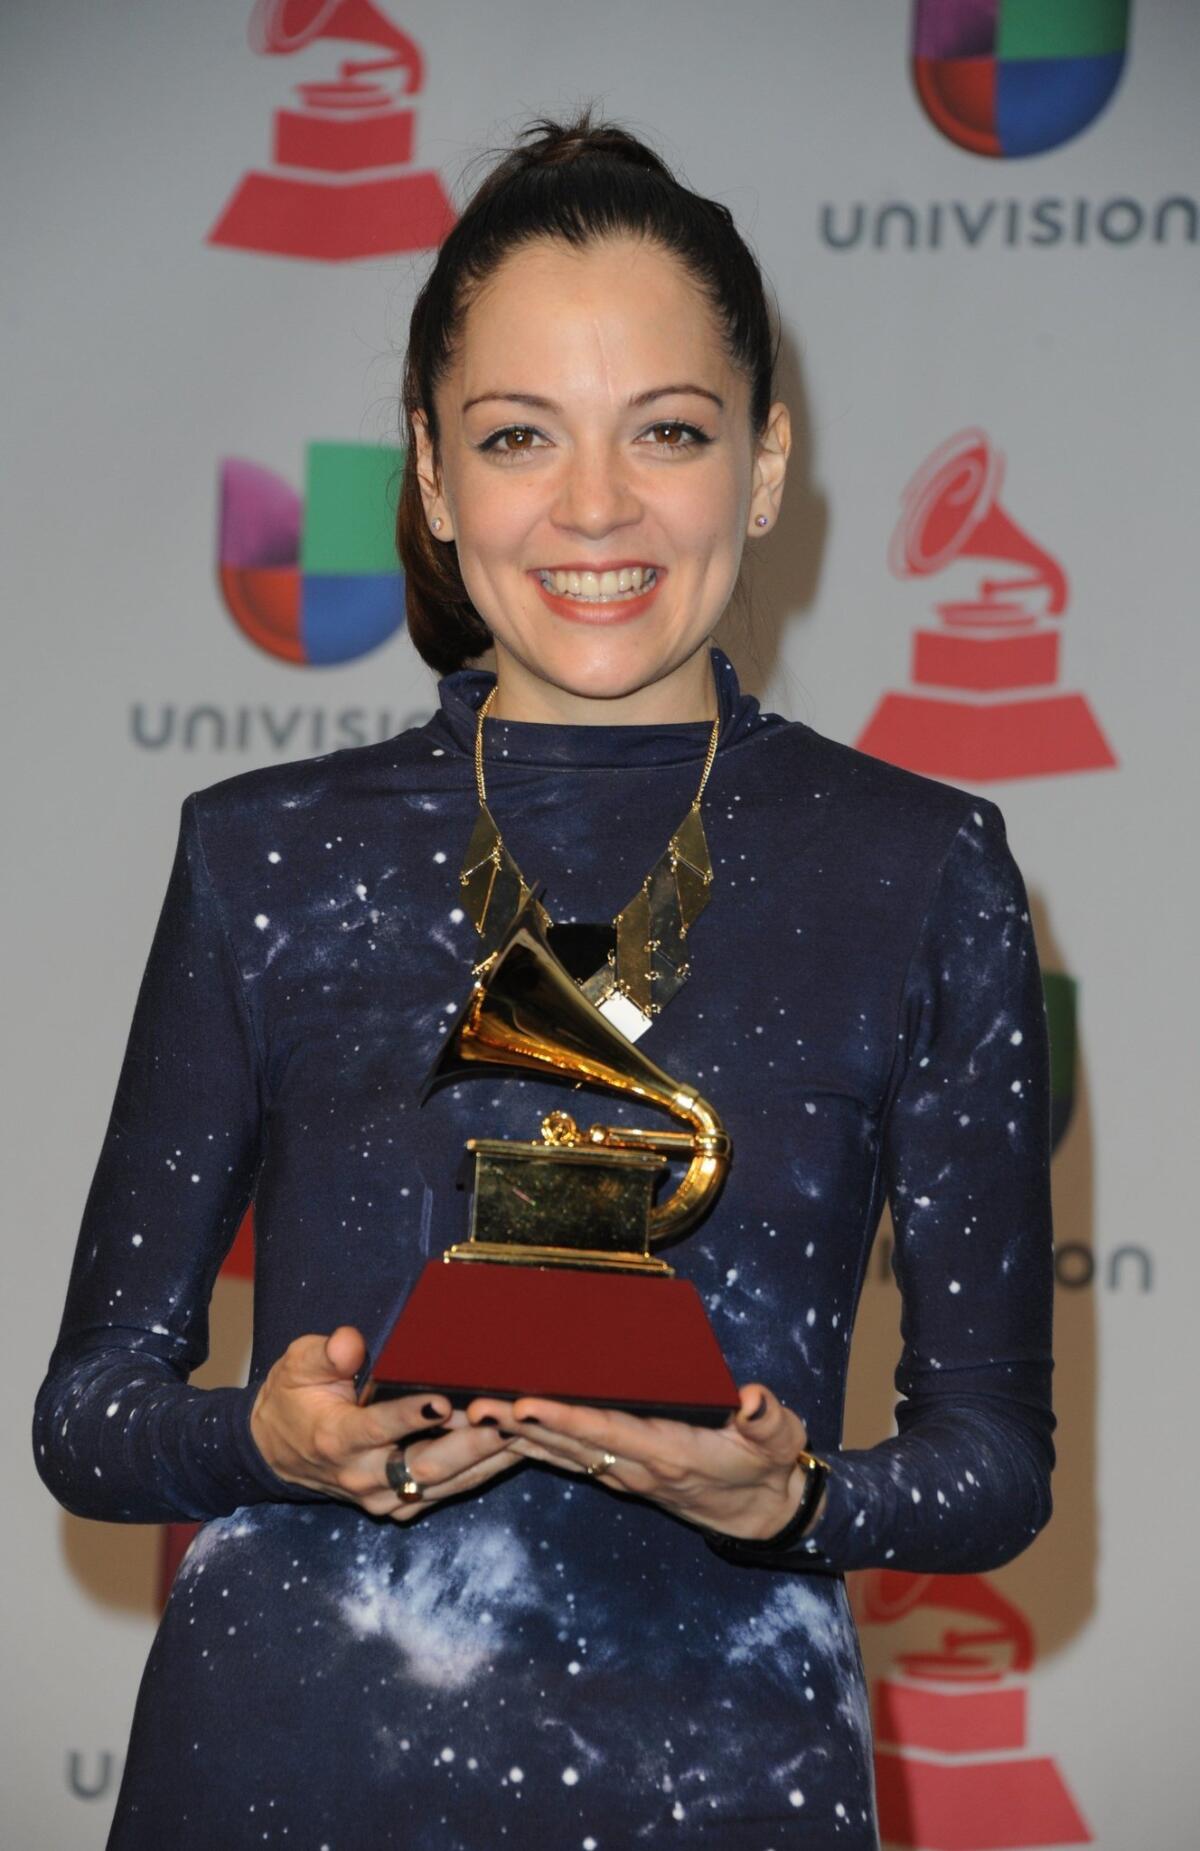 La fiesta recien empieza, pero la mexicana Natalia Lafourcade ya lleva la delantera en la entrega del Grammy Latino que se desarrolla en estos momentos.